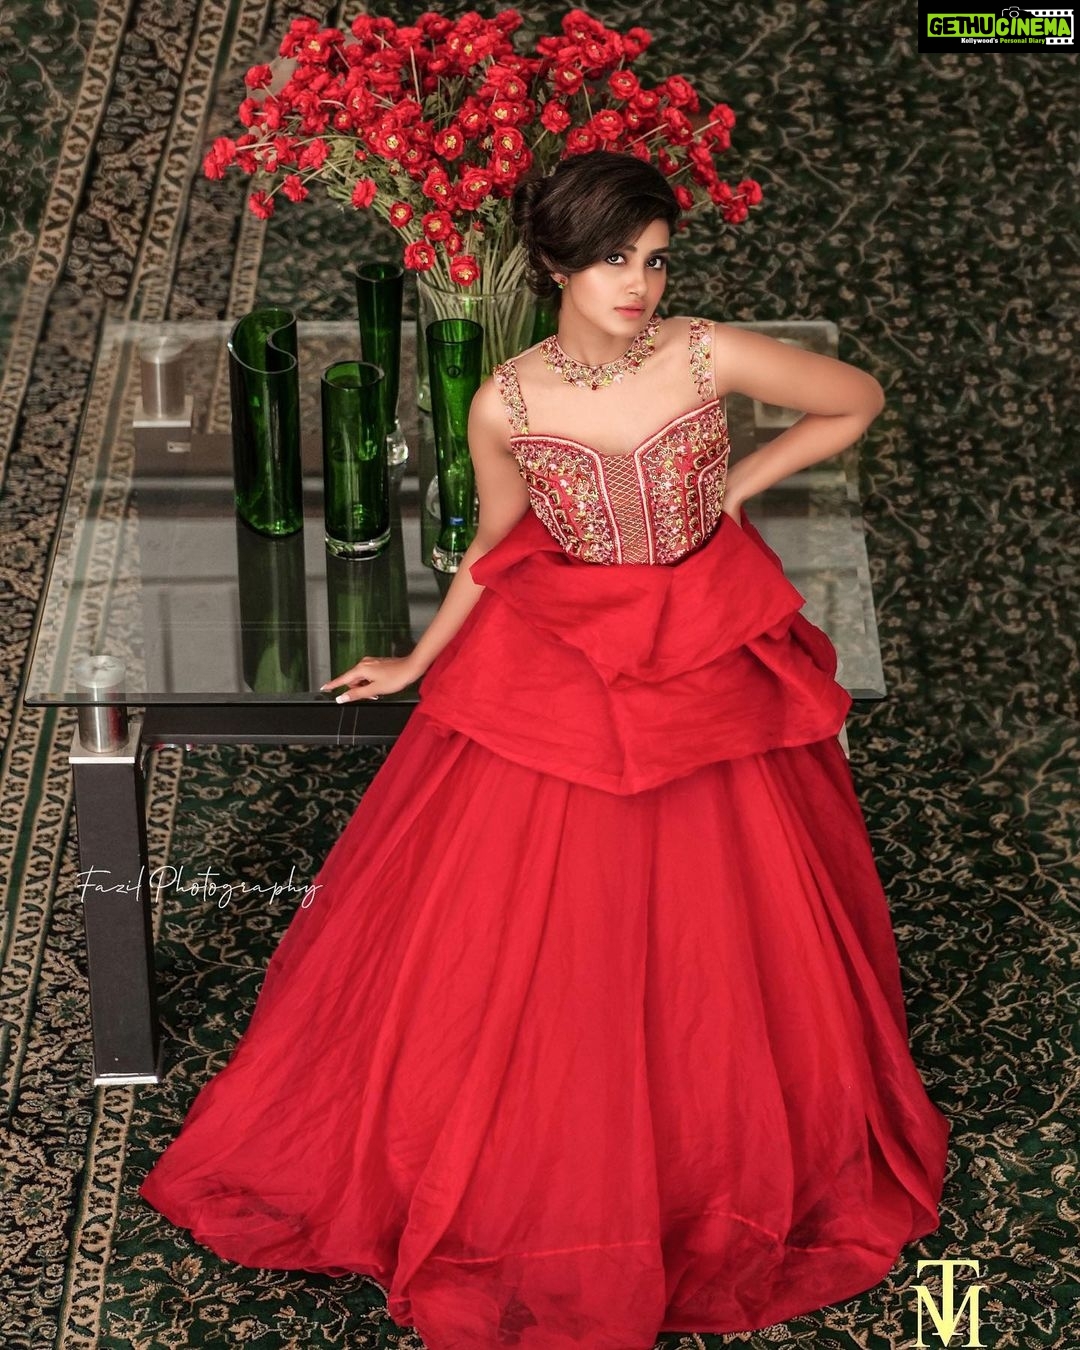 Anupama Parameswaran Instagram - The red 🌹 Outfit @maria.tiya.maria 🥰 ...